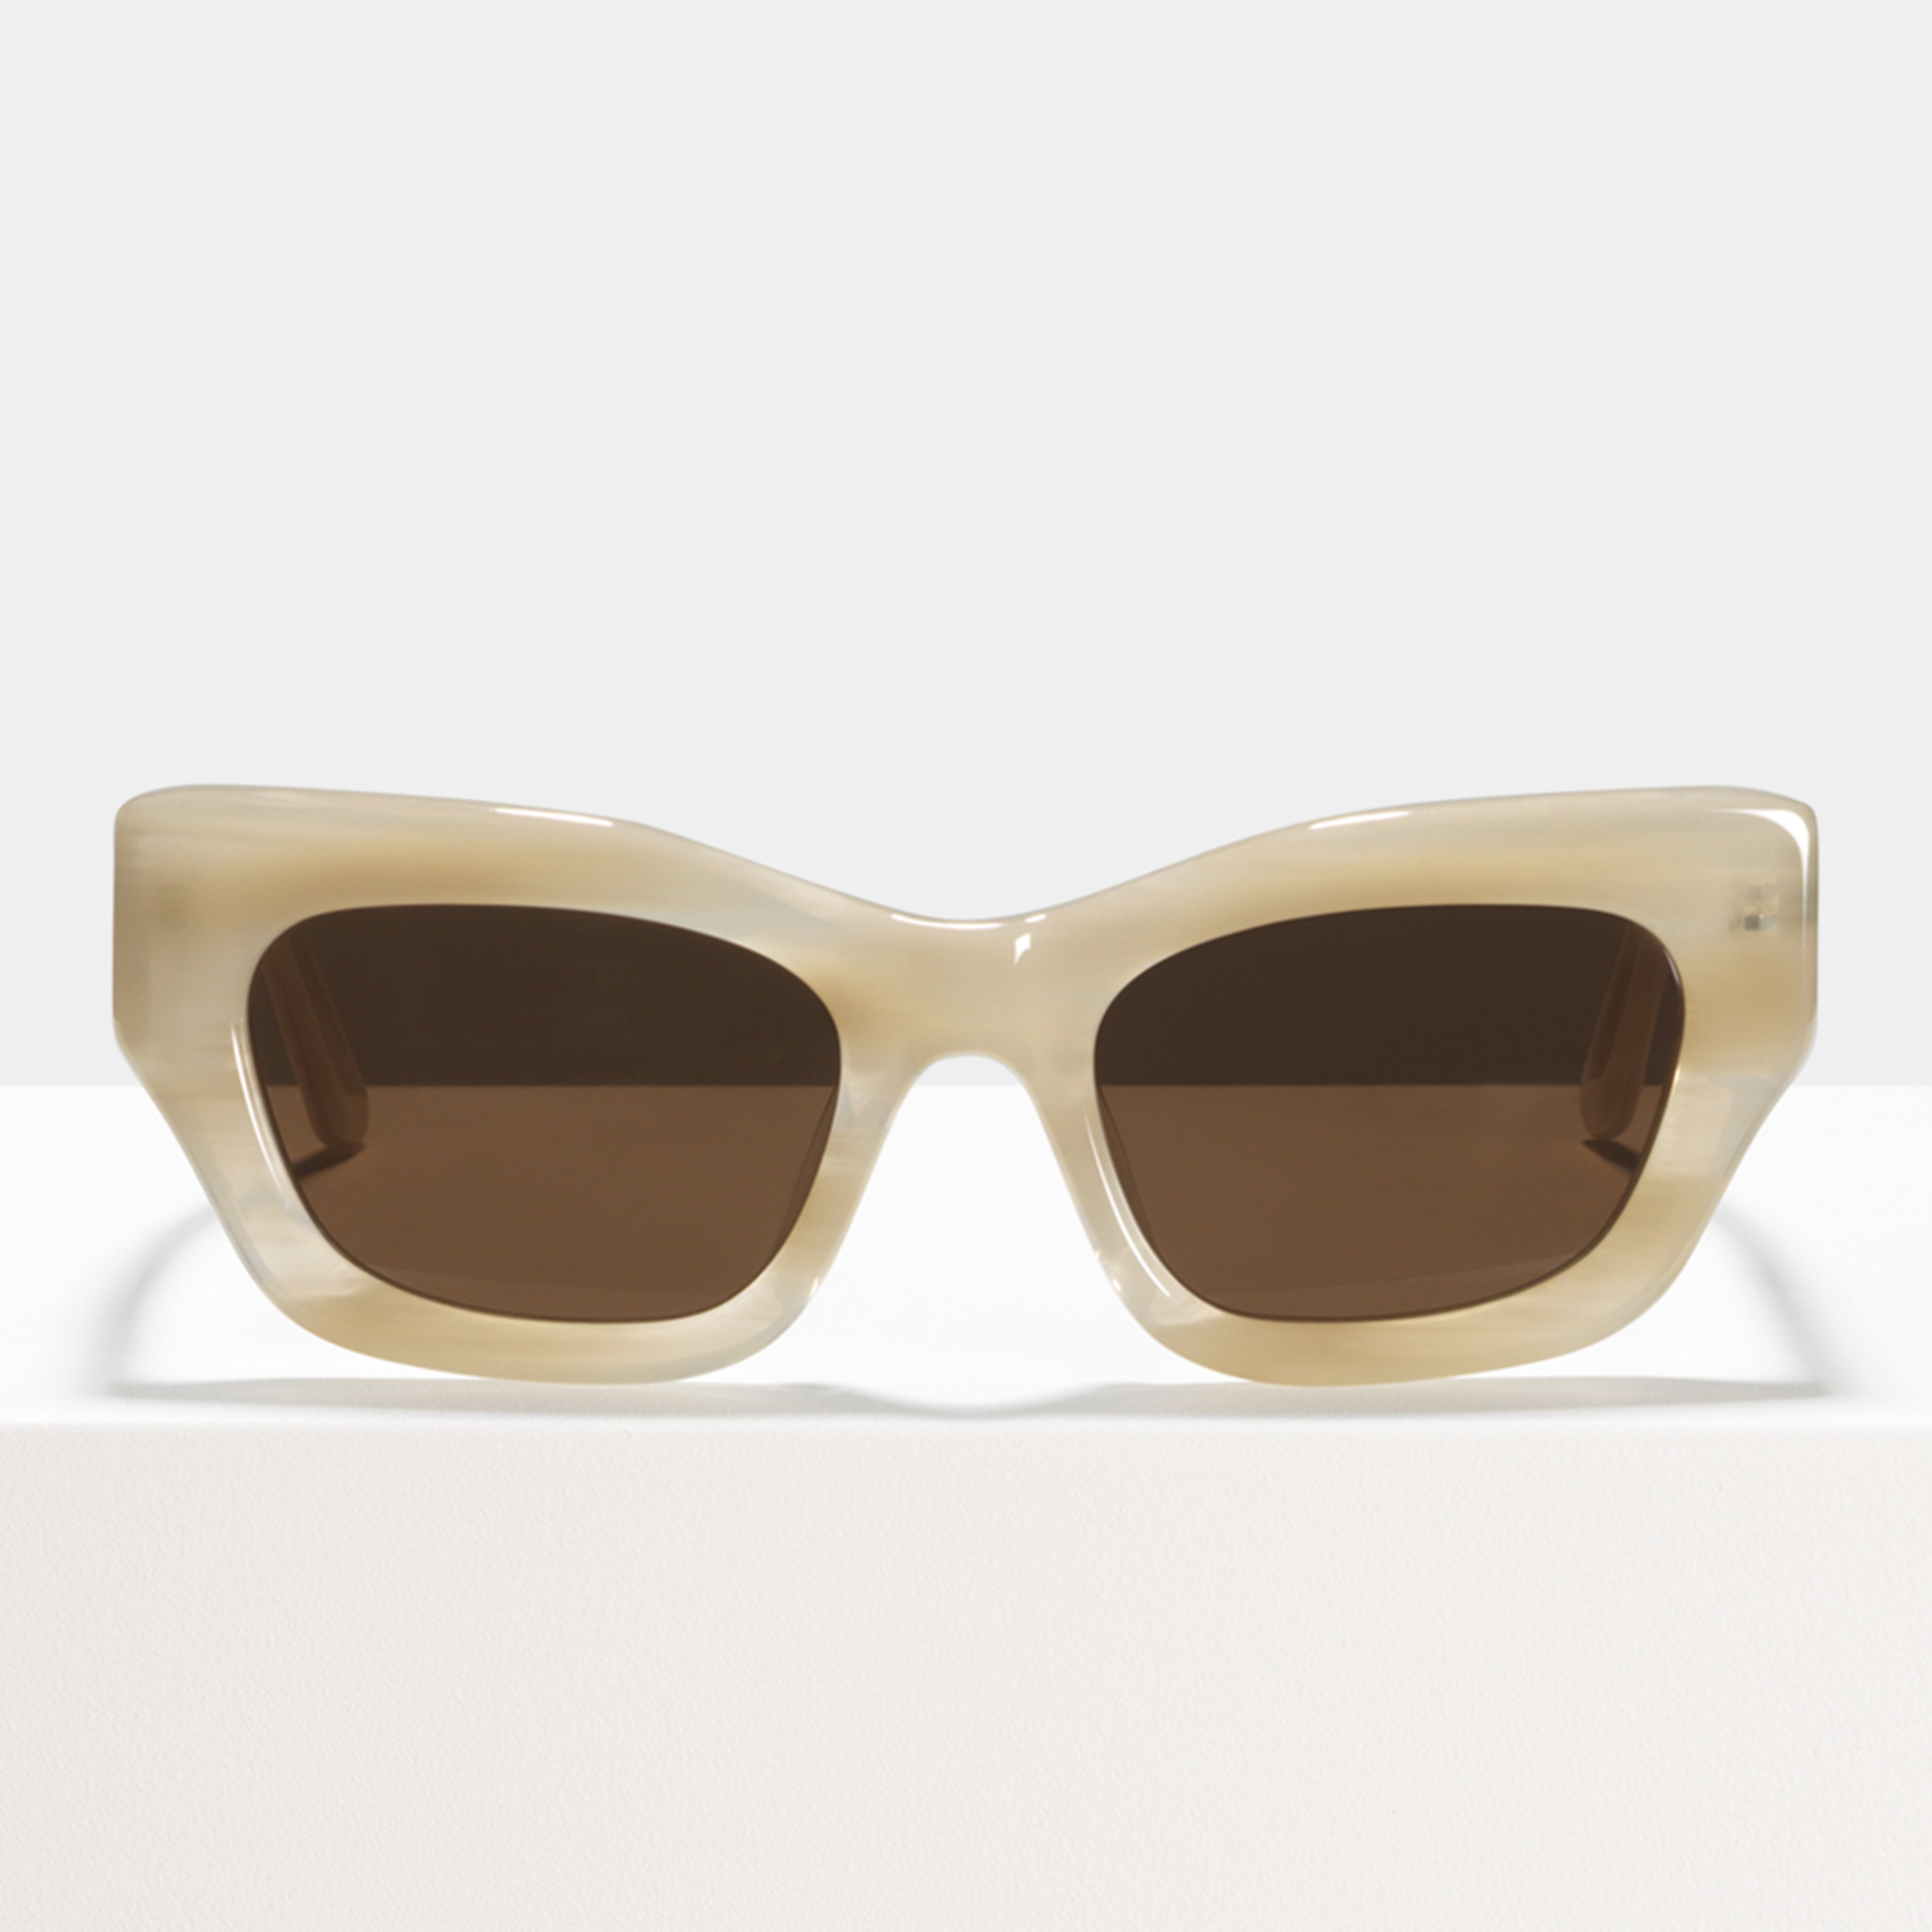 Ace & Tate Sonnenbrillen |  Acetat in Weiß